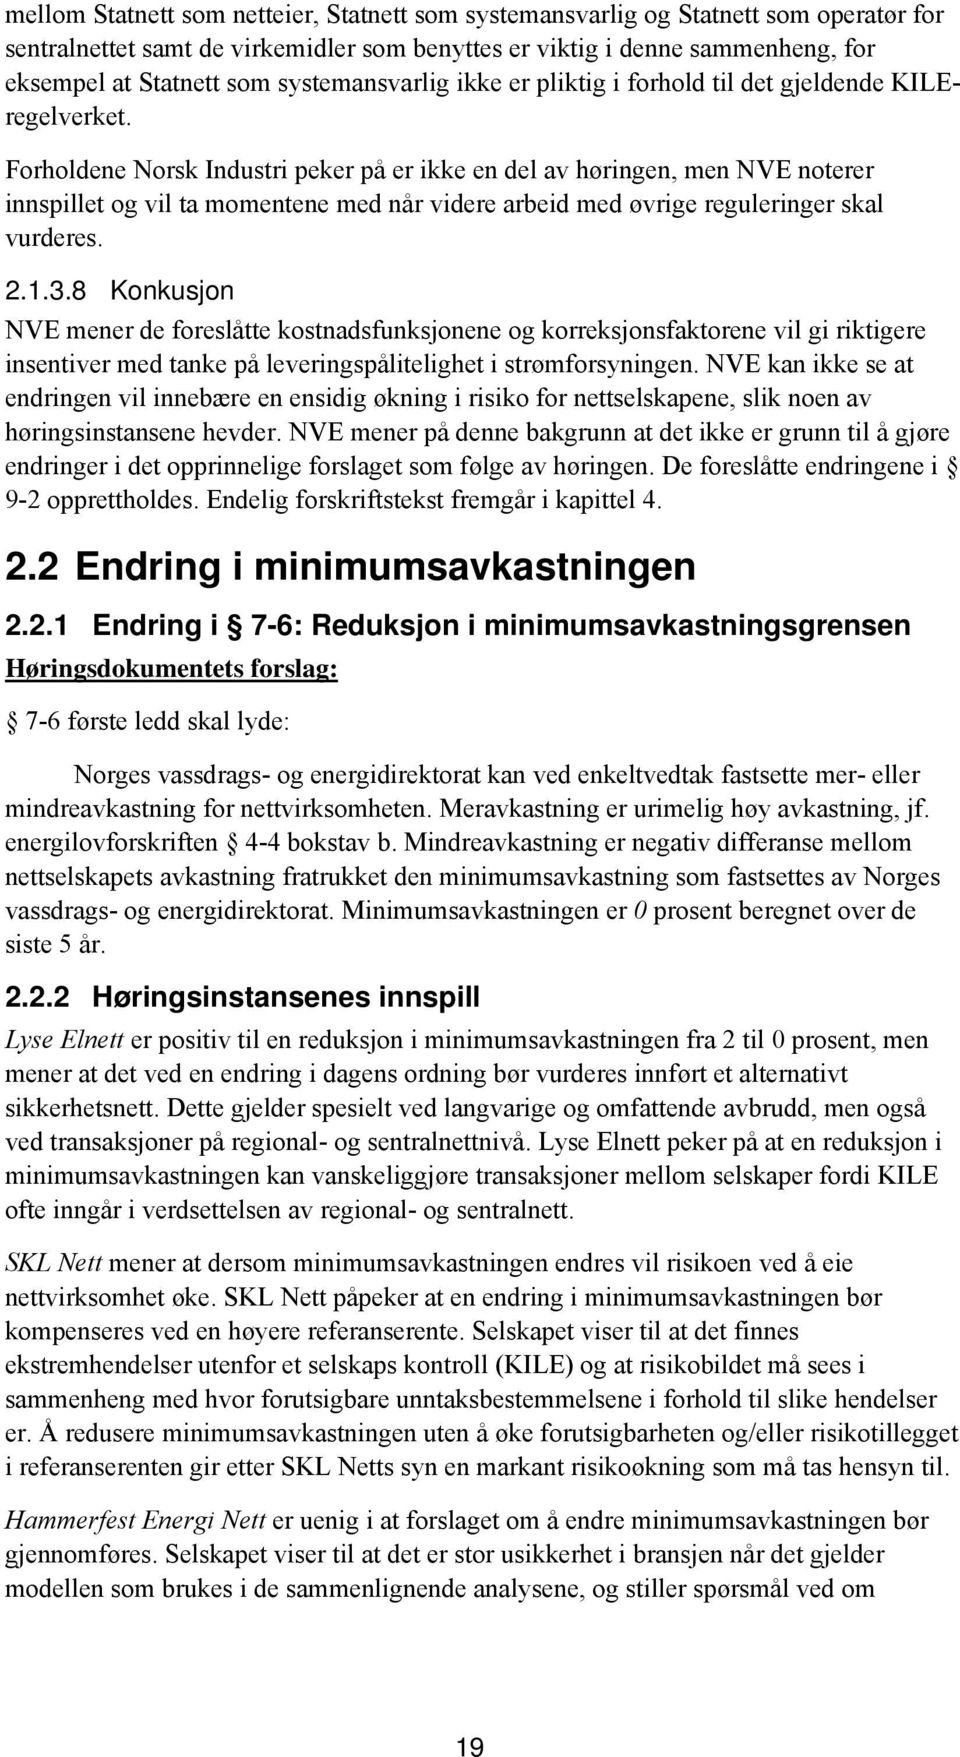 Forholdene Norsk Industri peker på er ikke en del av høringen, men NVE noterer innspillet og vil ta momentene med når videre arbeid med øvrige reguleringer skal vurderes. 2.1.3.